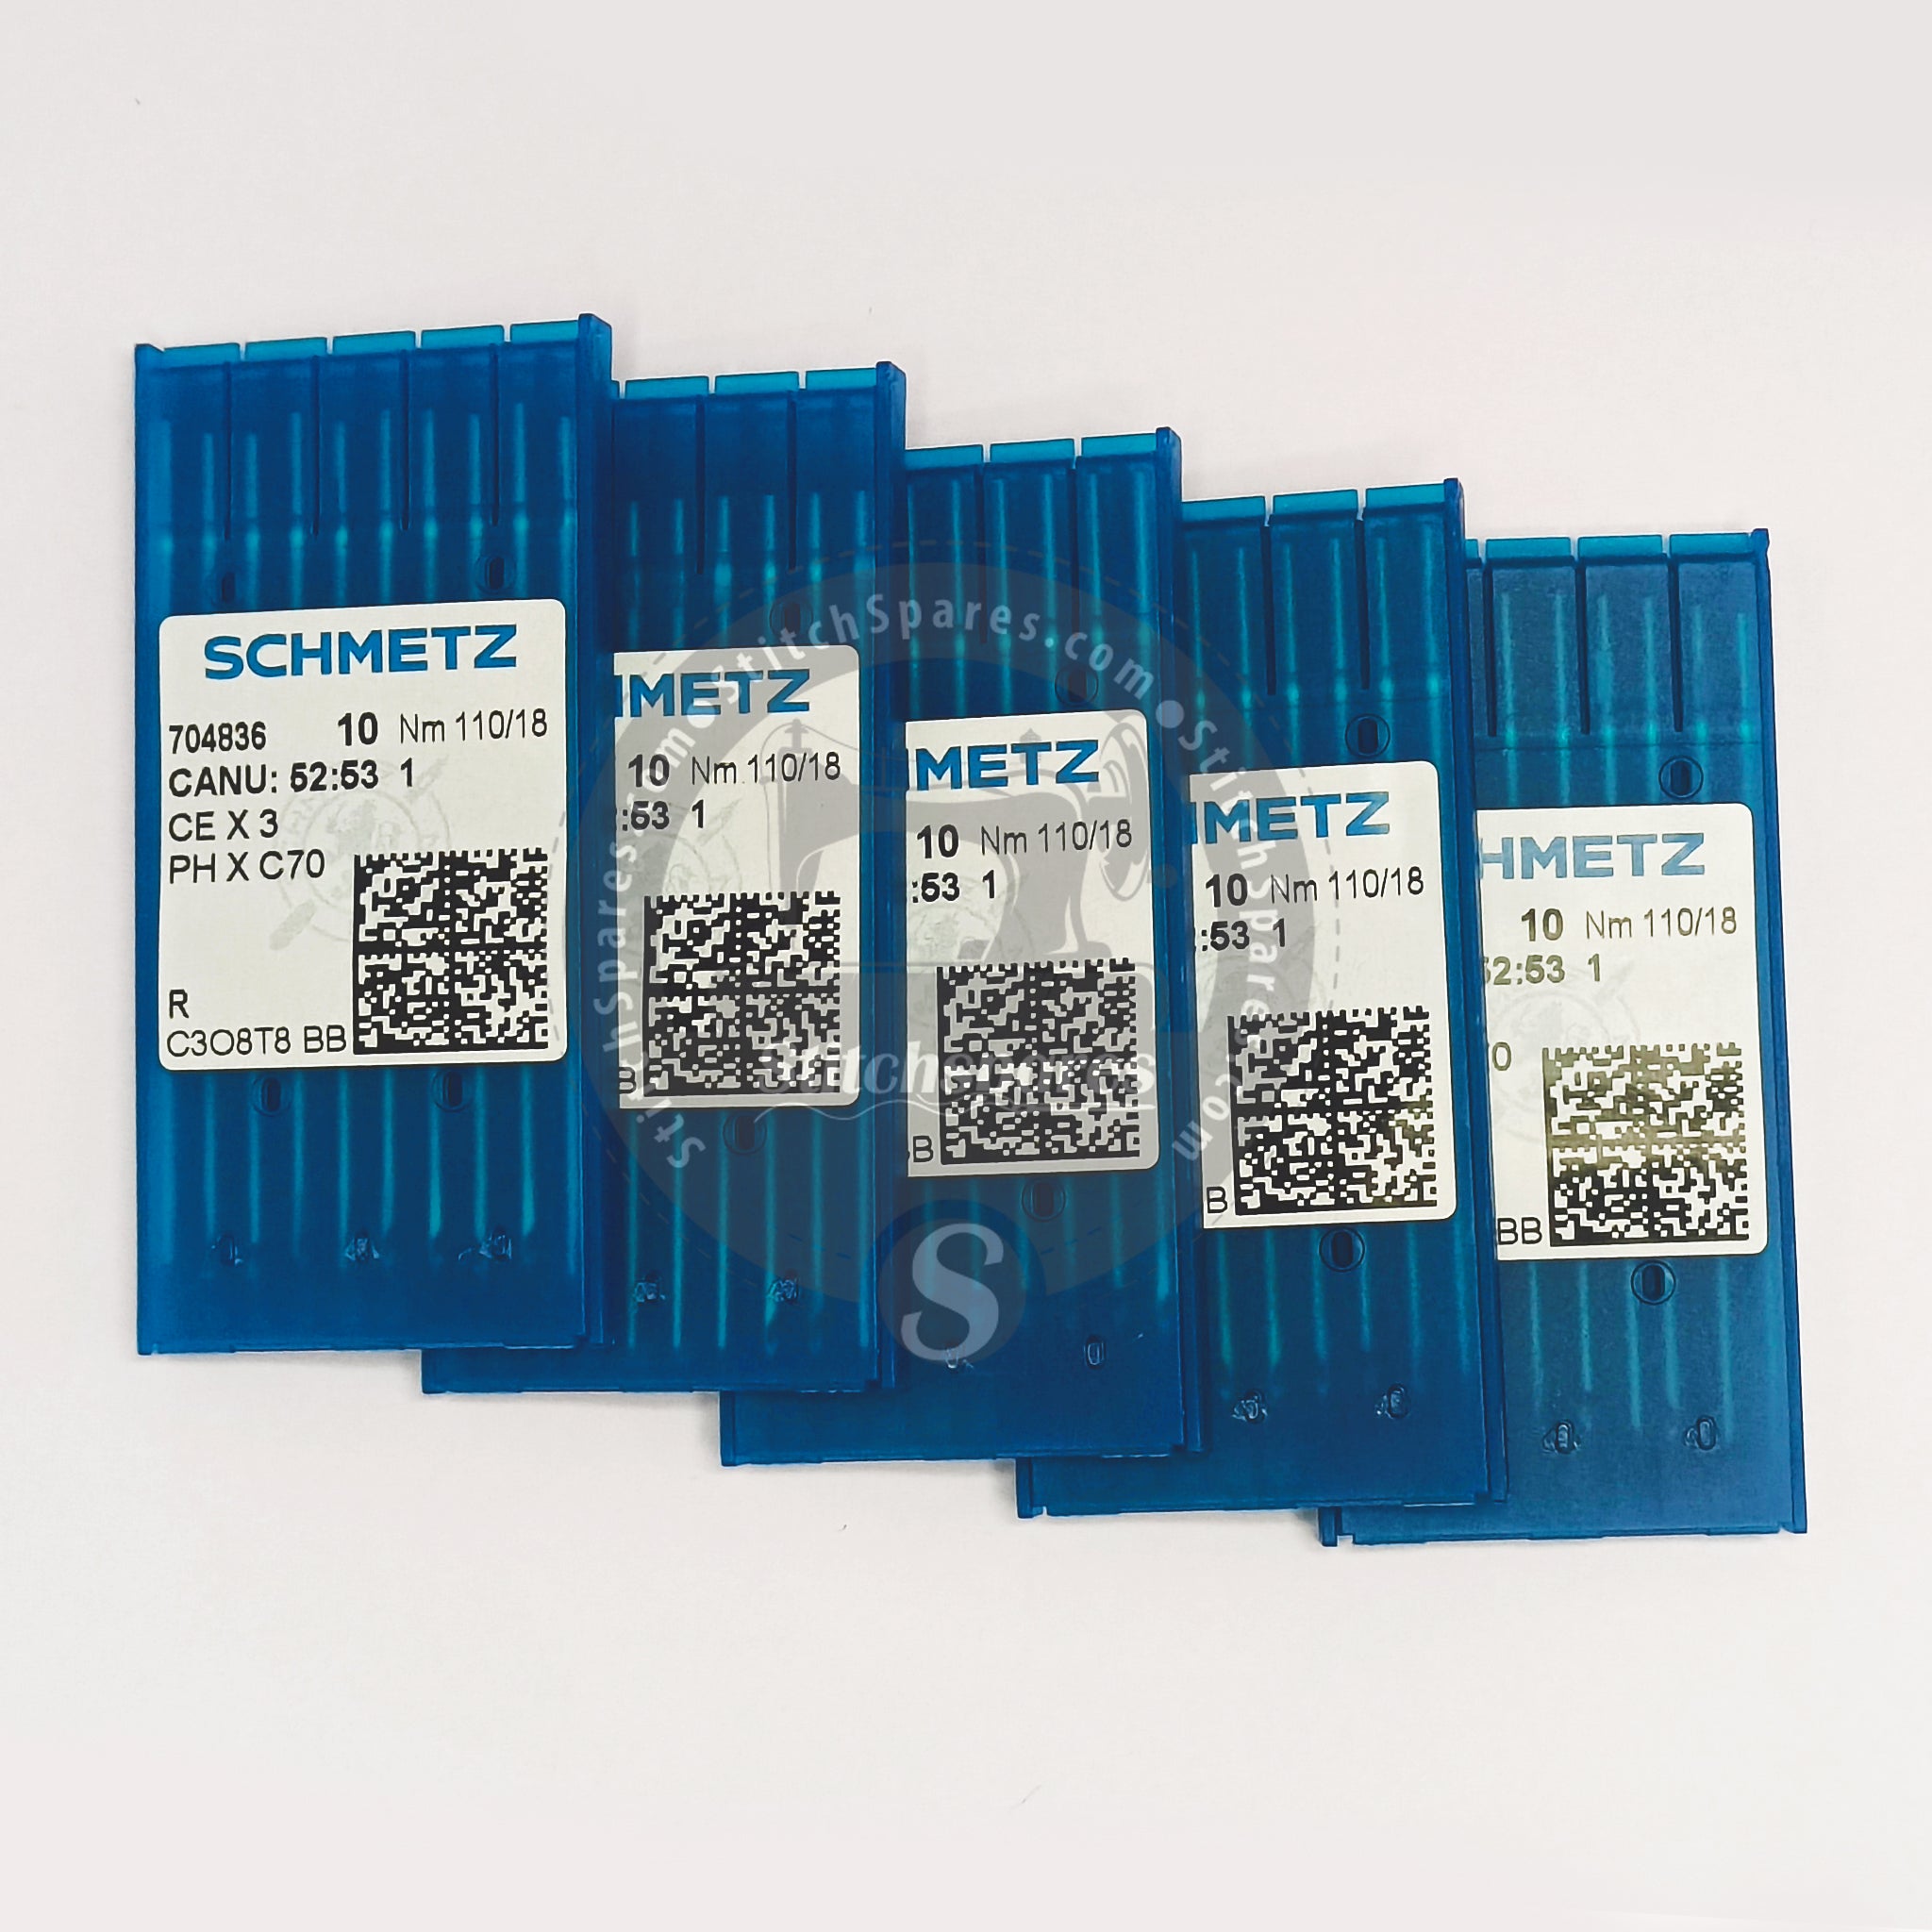 #704836 CEX3 / PHXC70 Nm 110/18 R Schmetz Agujas para máquinas de coser (paquete de 10 agujas)